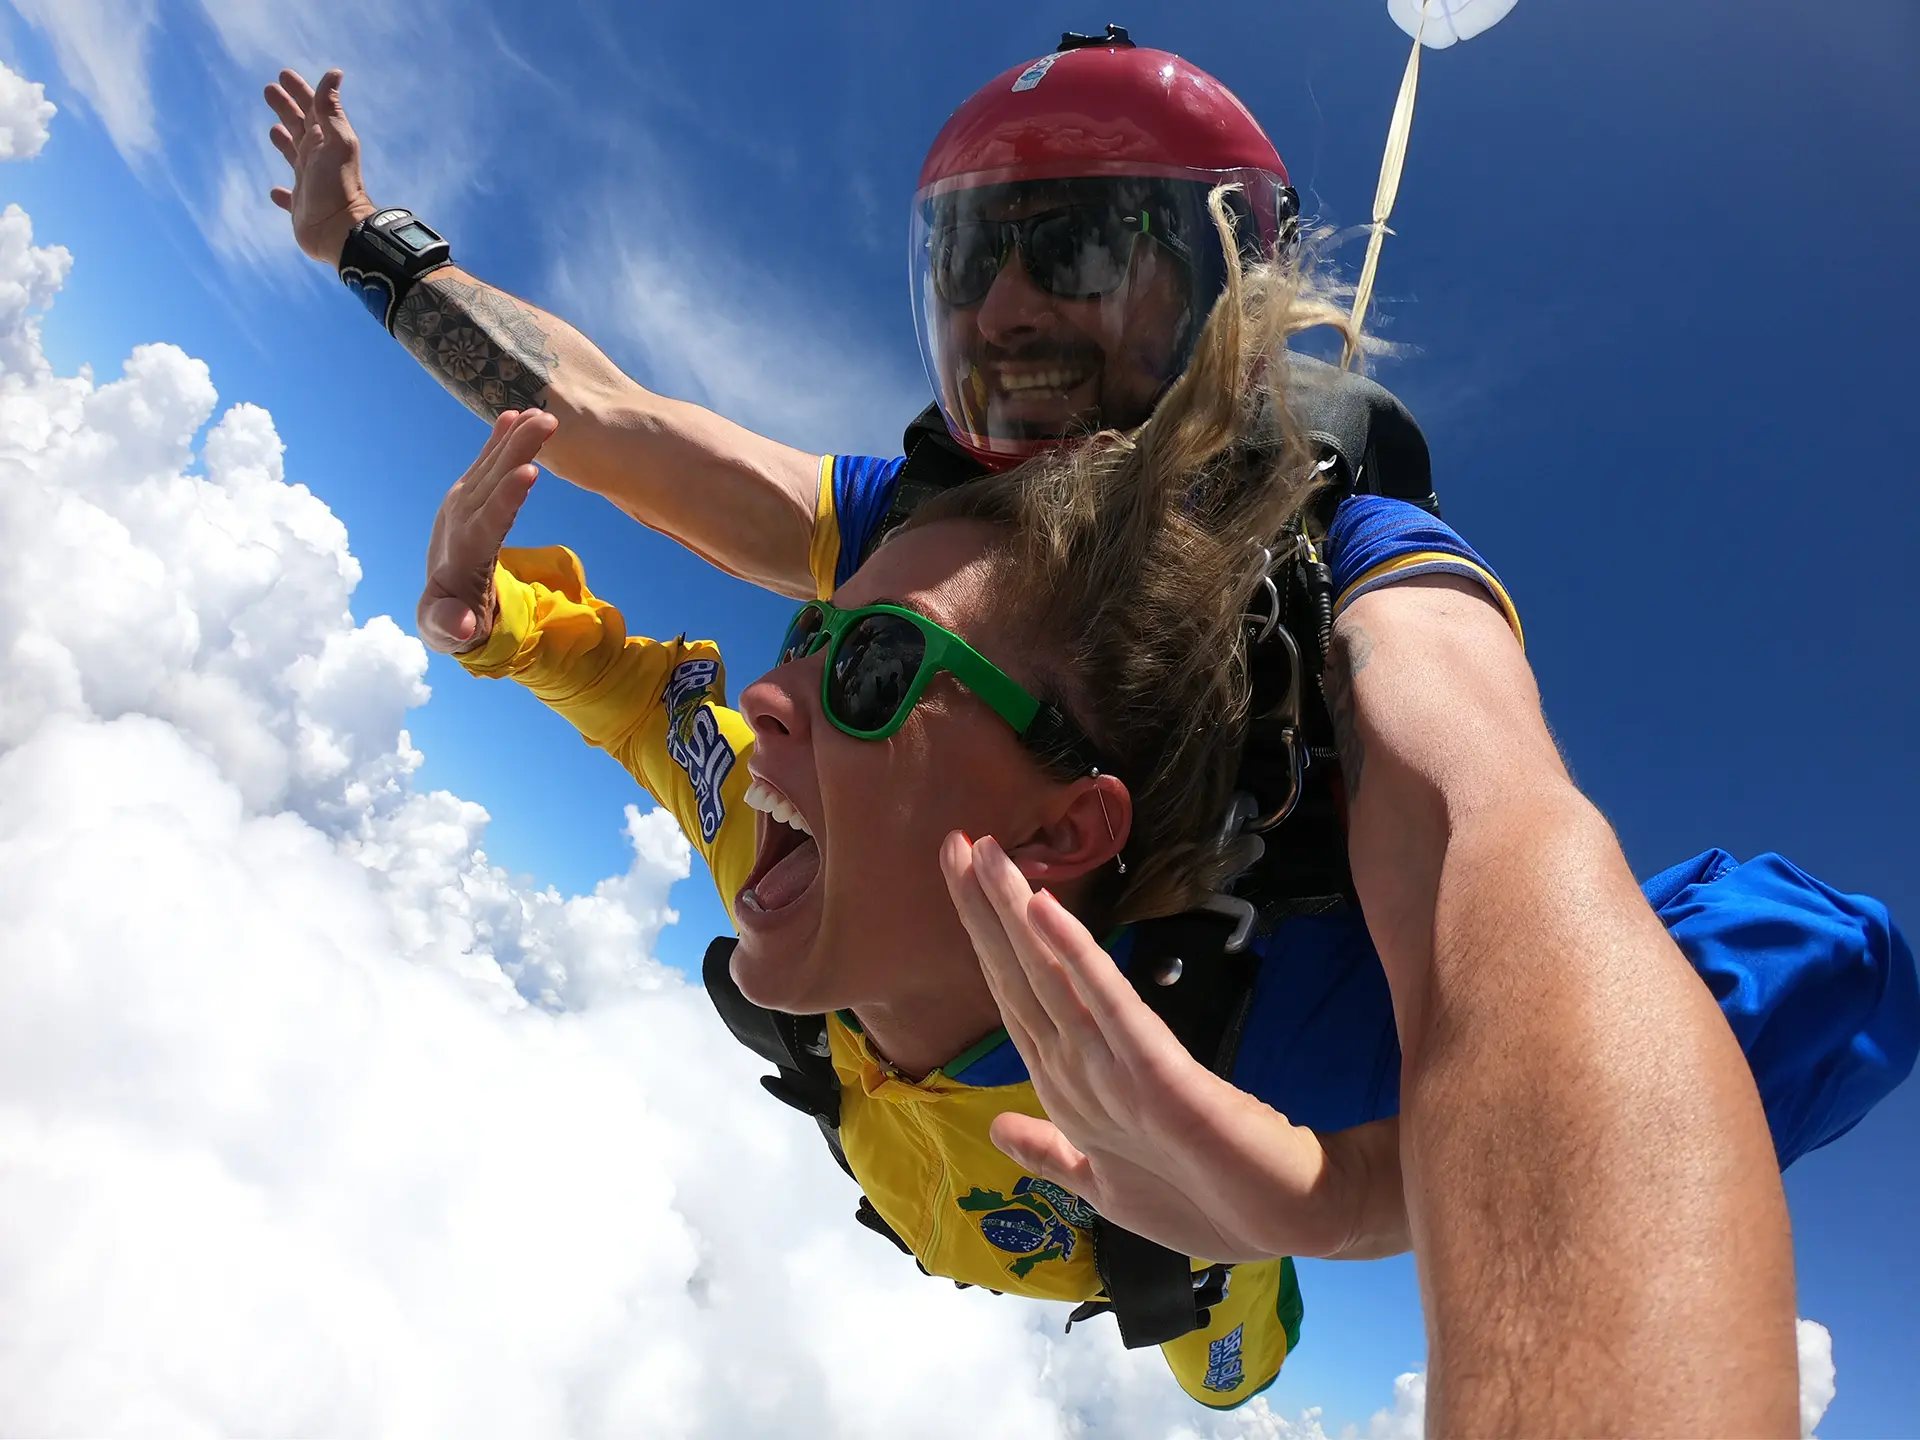 Salto de paraquedas com imagens de handcam